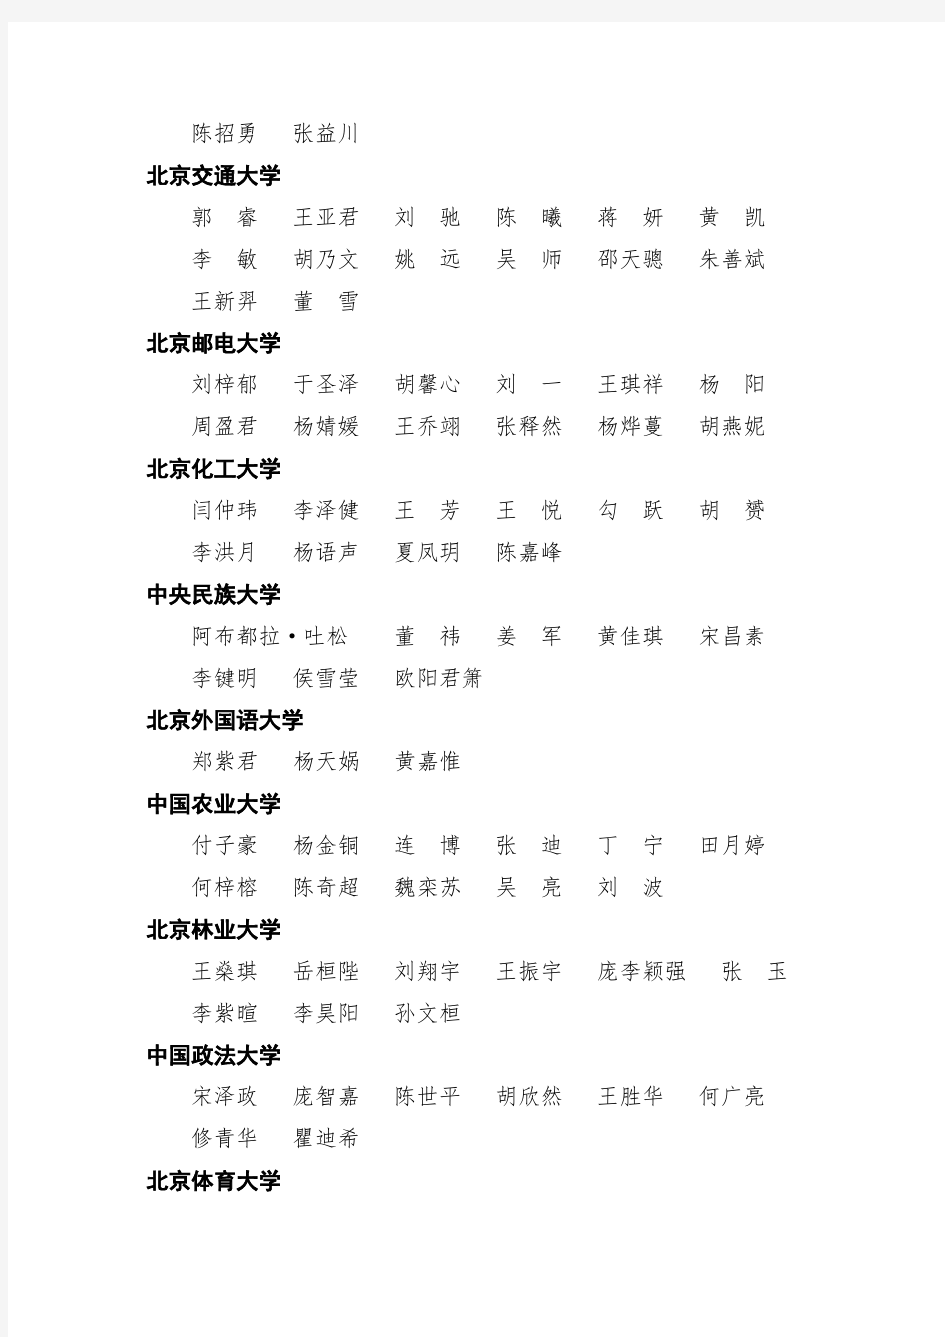 【免费下载】度北京市优秀学生干部表彰名单